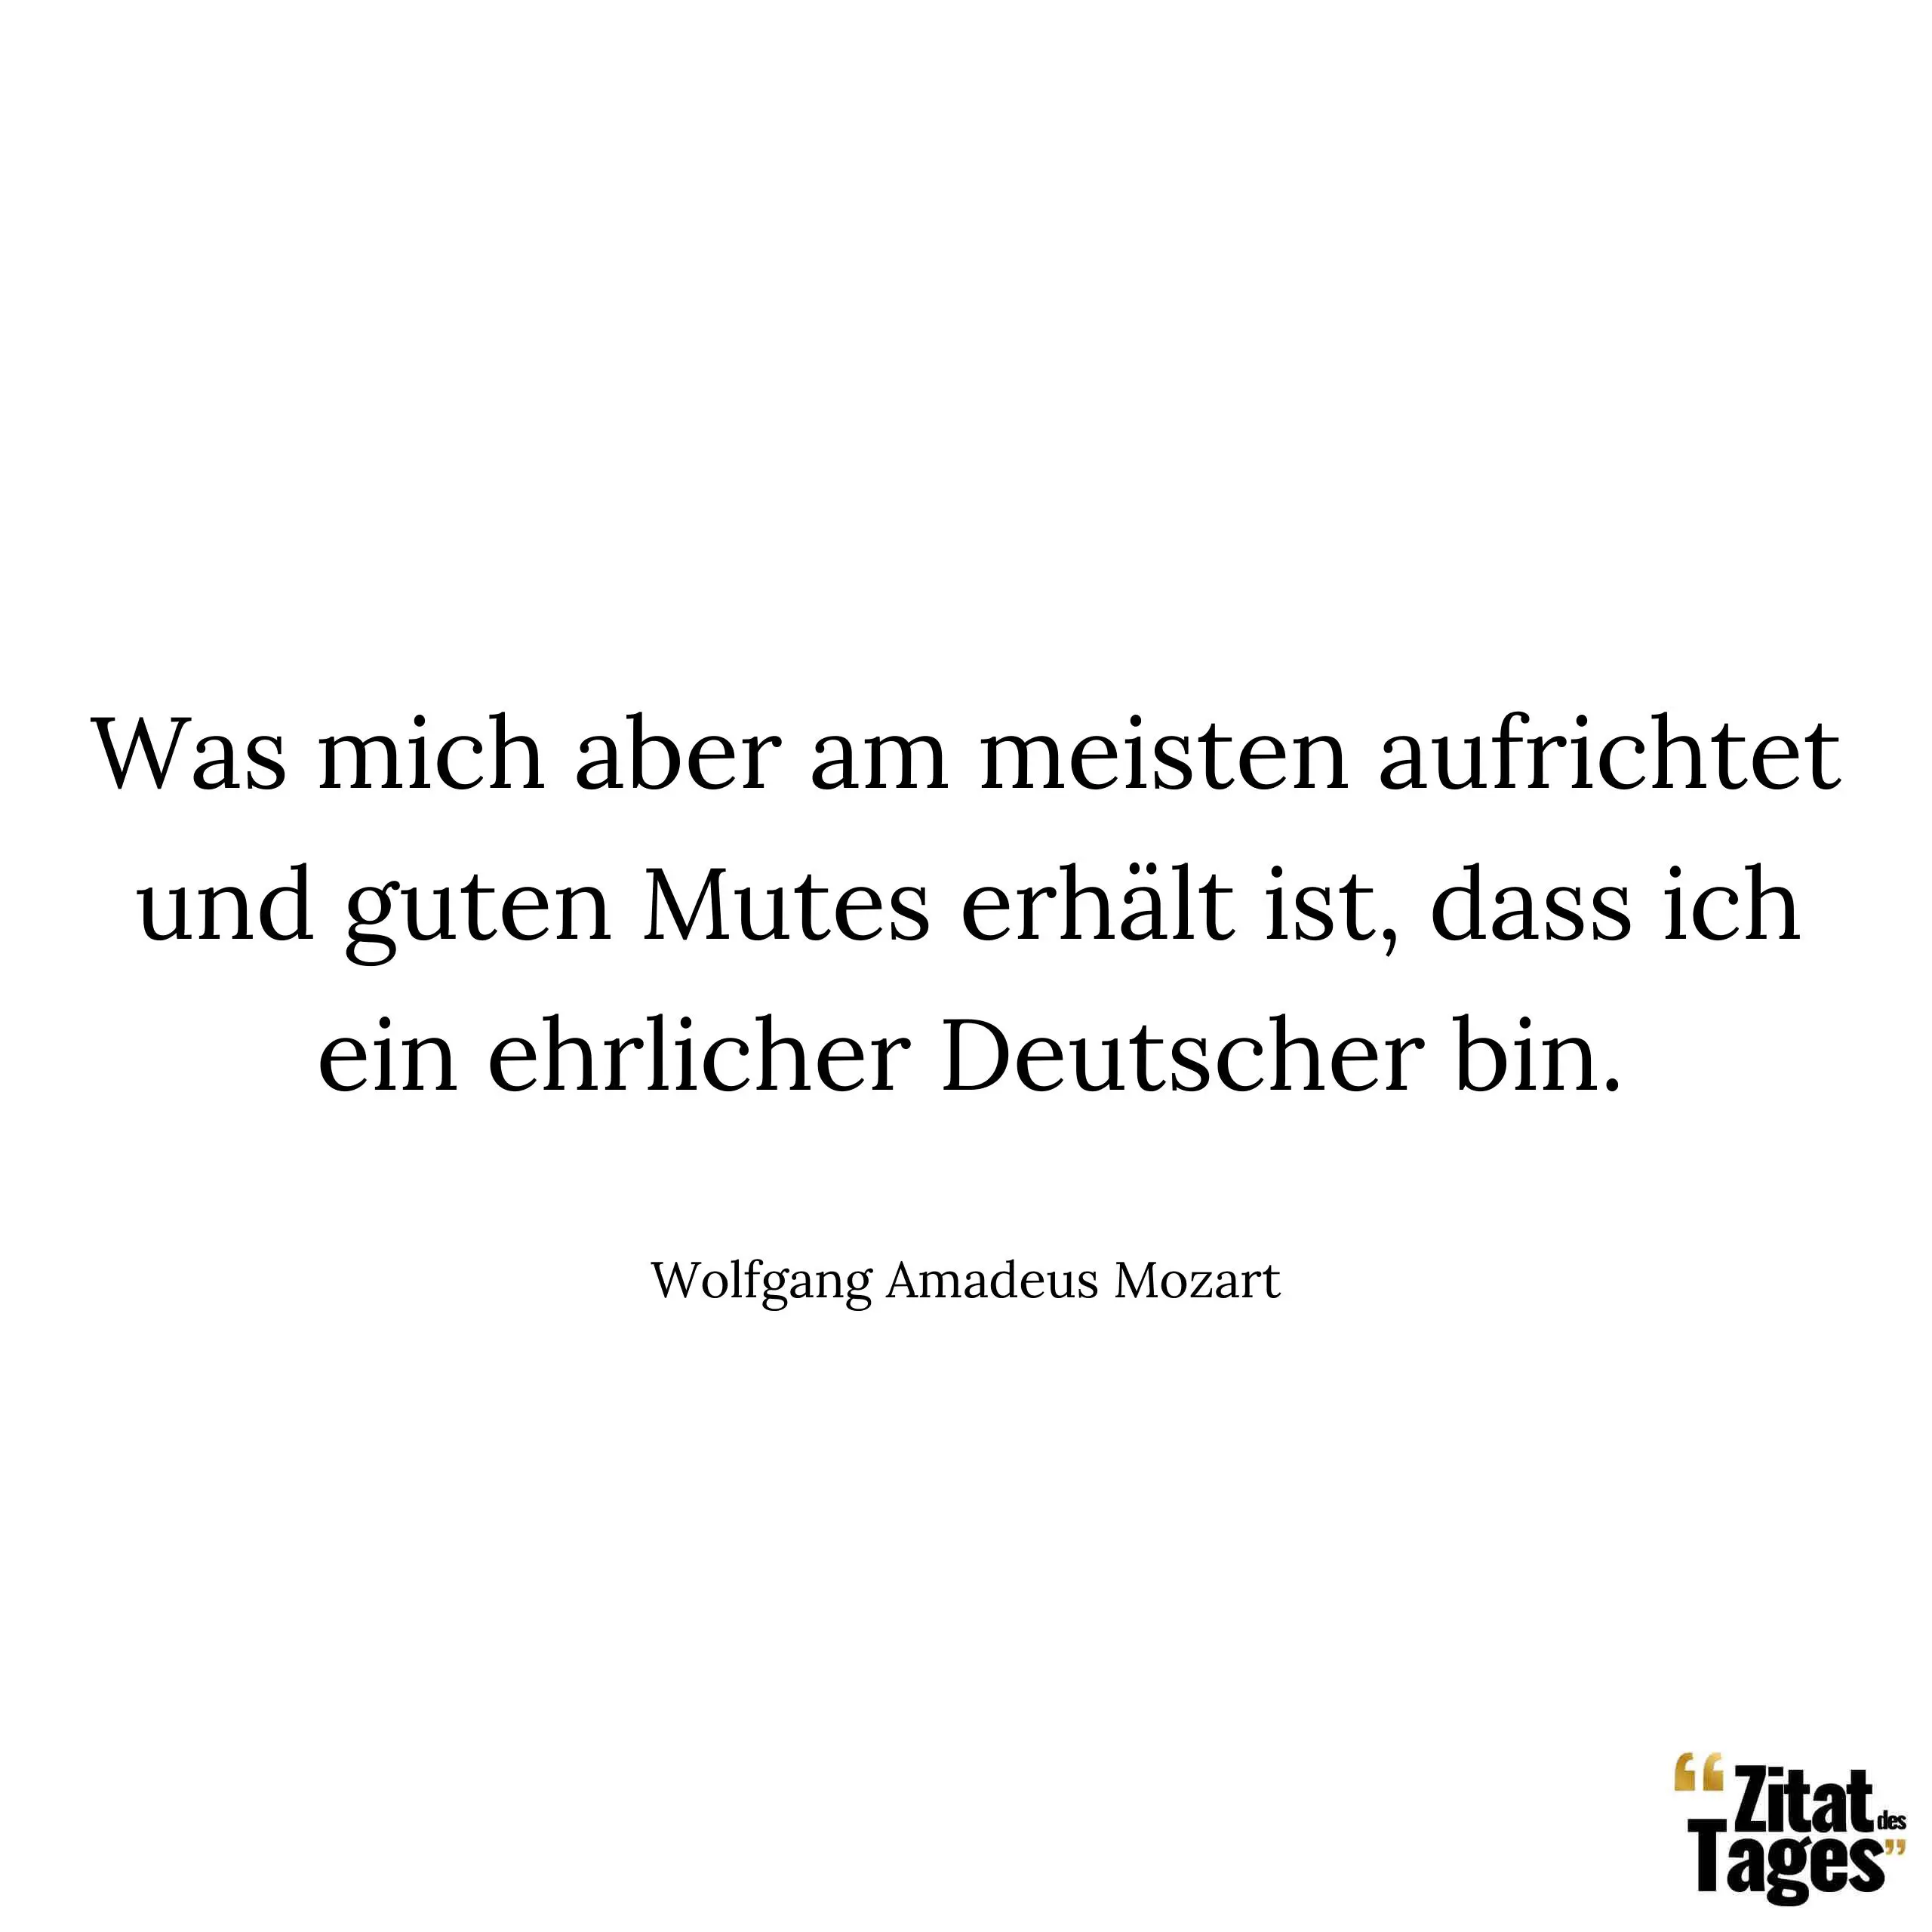 Was mich aber am meisten aufrichtet und guten Mutes erhält ist, dass ich ein ehrlicher Deutscher bin. - Wolfgang Amadeus Mozart